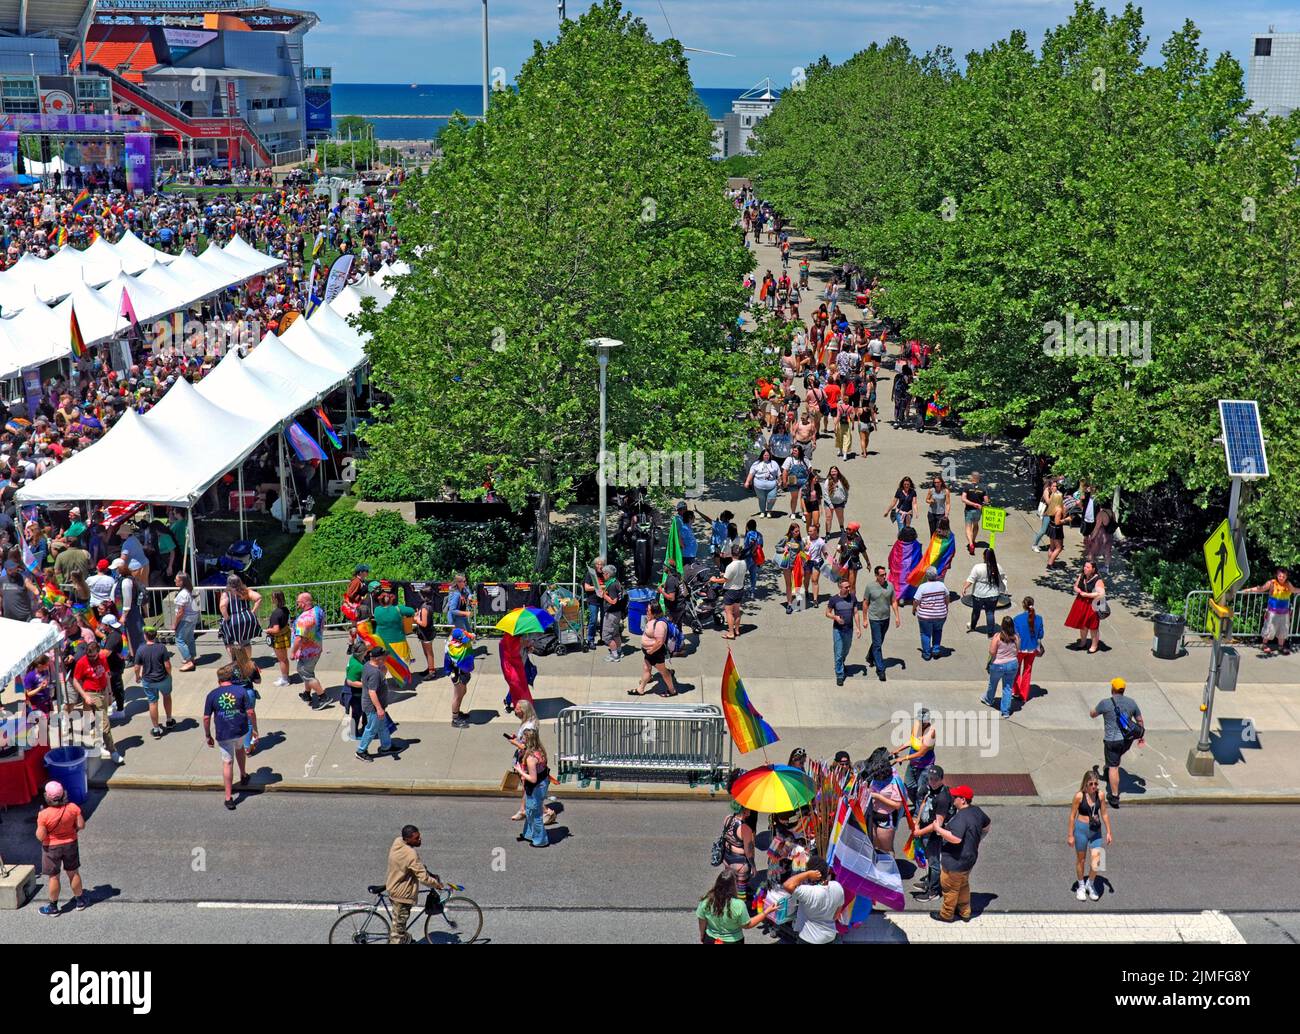 Fierté de l'événement CLE sur 4 juin 2022, a attiré environ 30 000 personnes pour l'événement annuel en plein air dans le centre-ville, Cleveland, Ohio, États-Unis. Banque D'Images